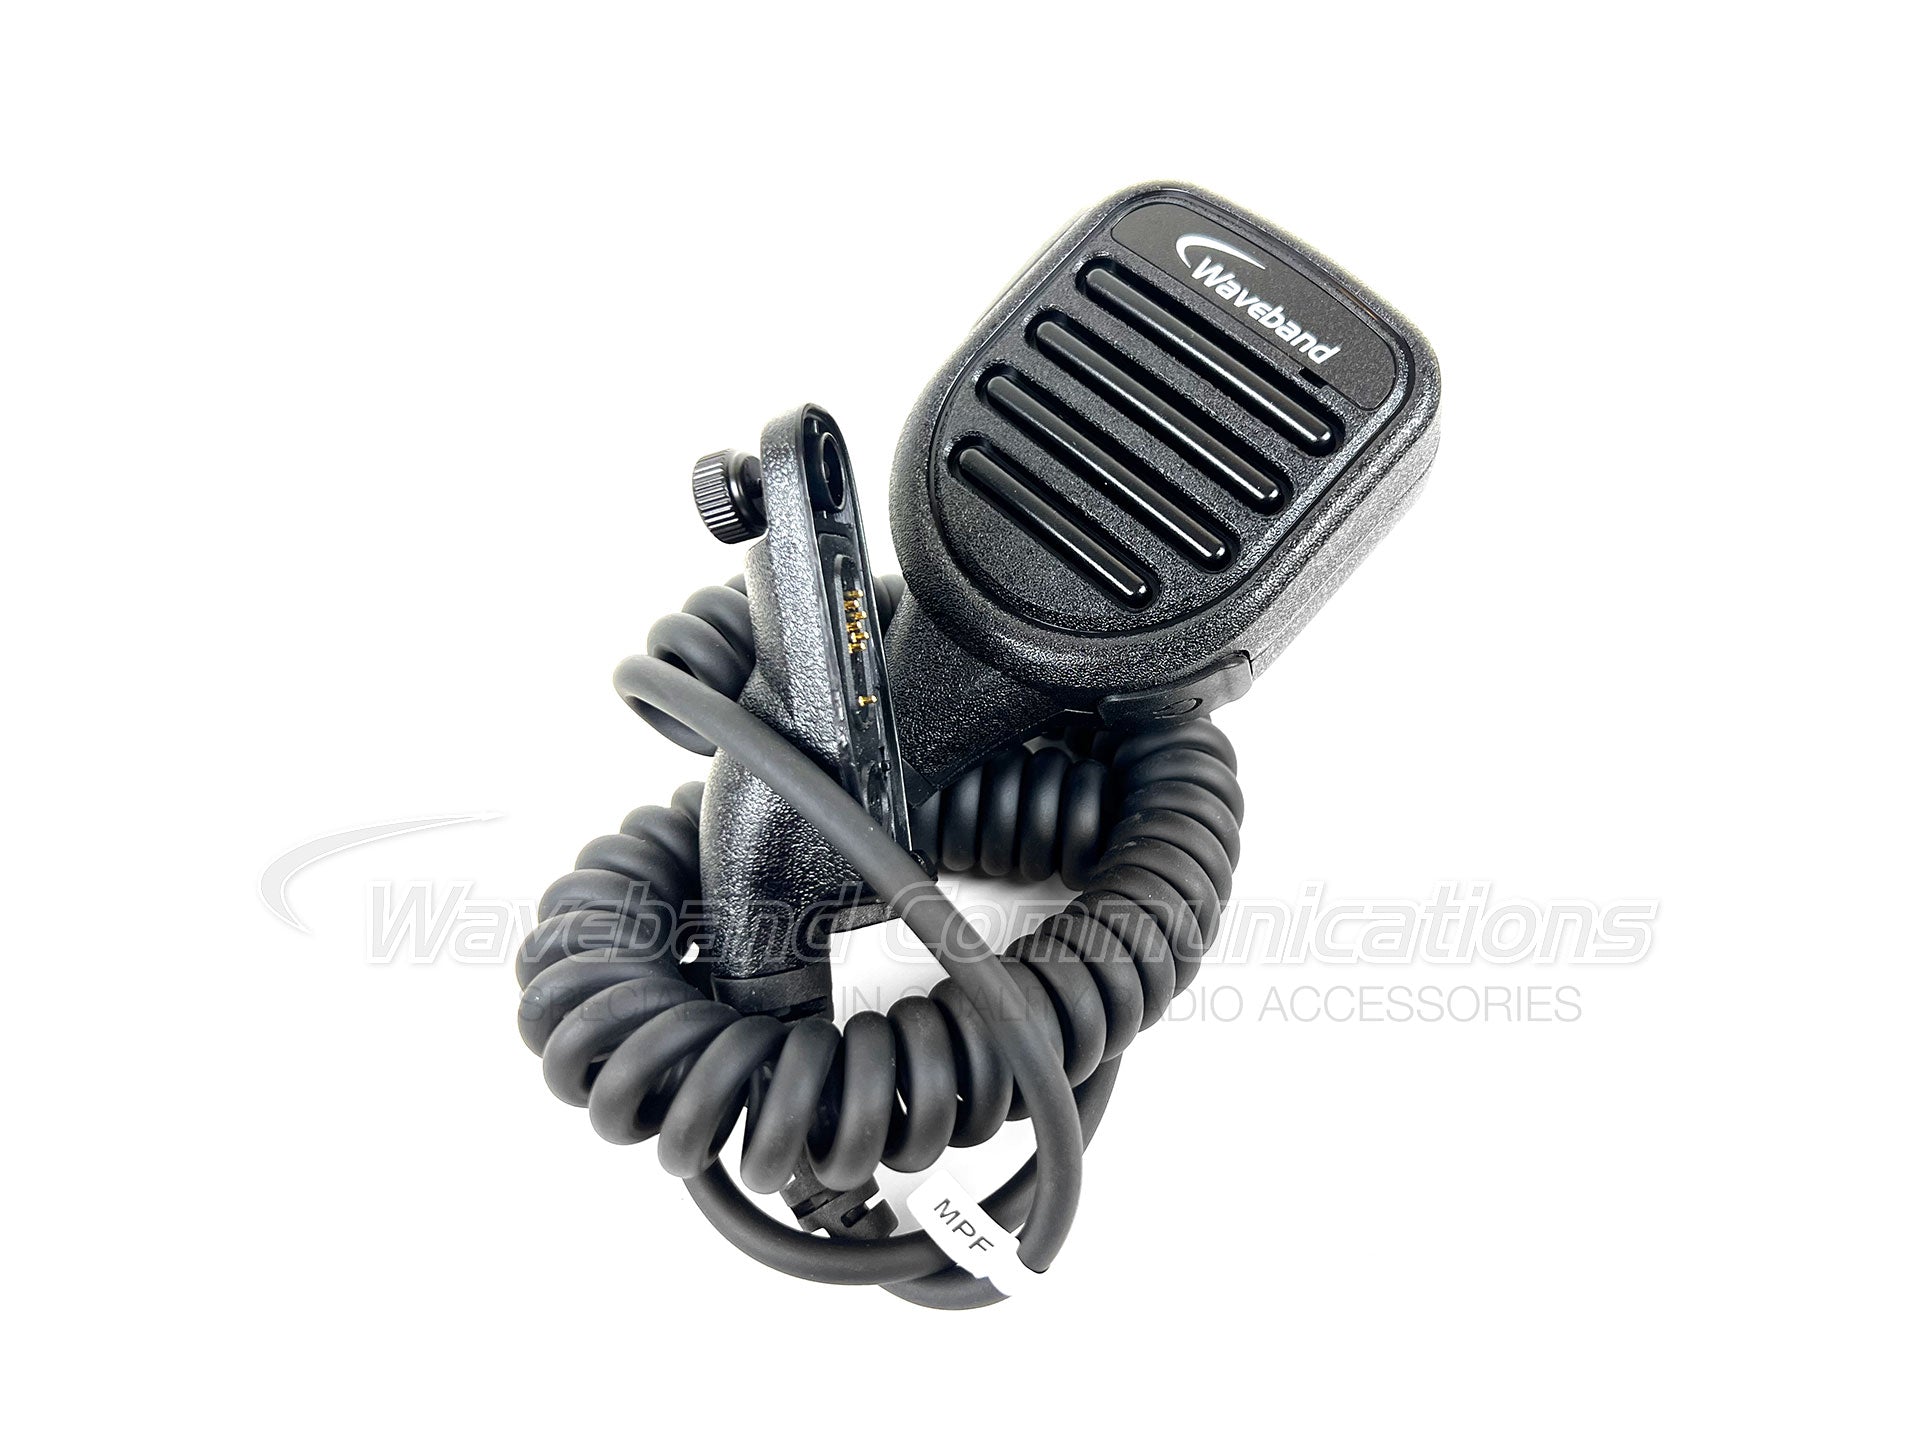 Microfone com alto-falante remoto compatível com Motorola PMMN4069APX